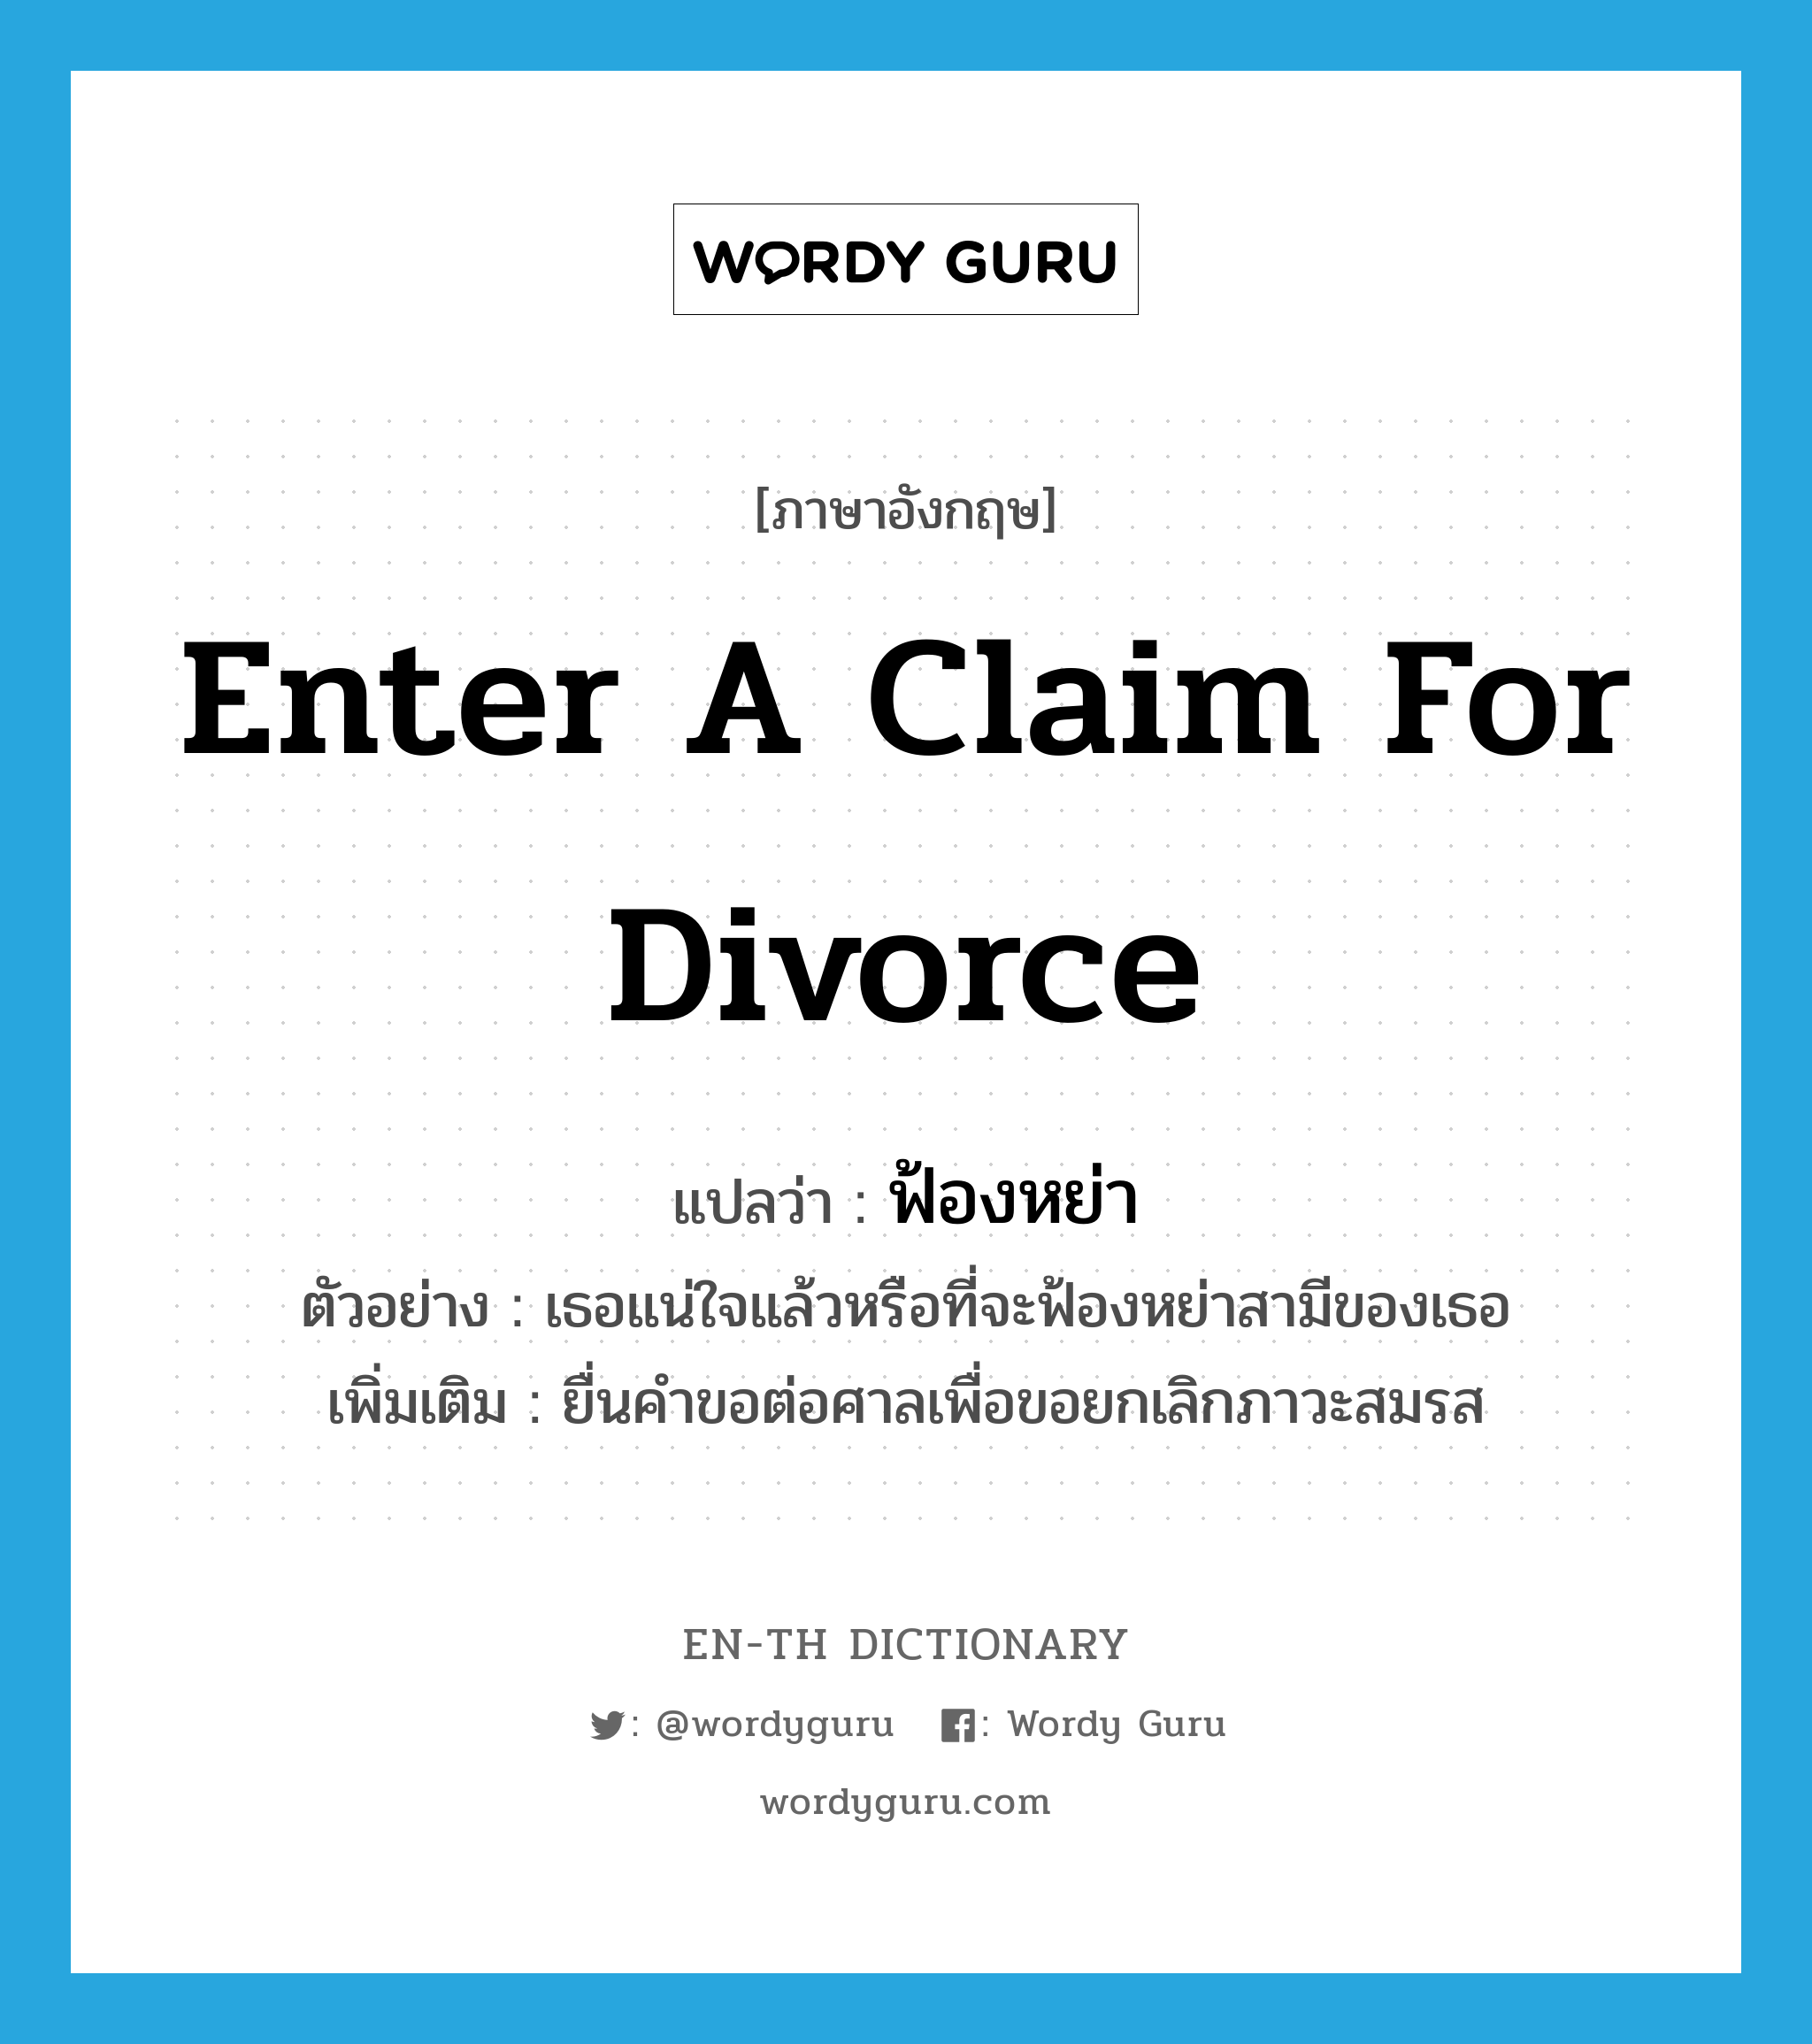 ฟ้องหย่า ภาษาอังกฤษ?, คำศัพท์ภาษาอังกฤษ ฟ้องหย่า แปลว่า enter a claim for divorce ประเภท V ตัวอย่าง เธอแน่ใจแล้วหรือที่จะฟ้องหย่าสามีของเธอ เพิ่มเติม ยื่นคำขอต่อศาลเพื่อขอยกเลิกภาวะสมรส หมวด V